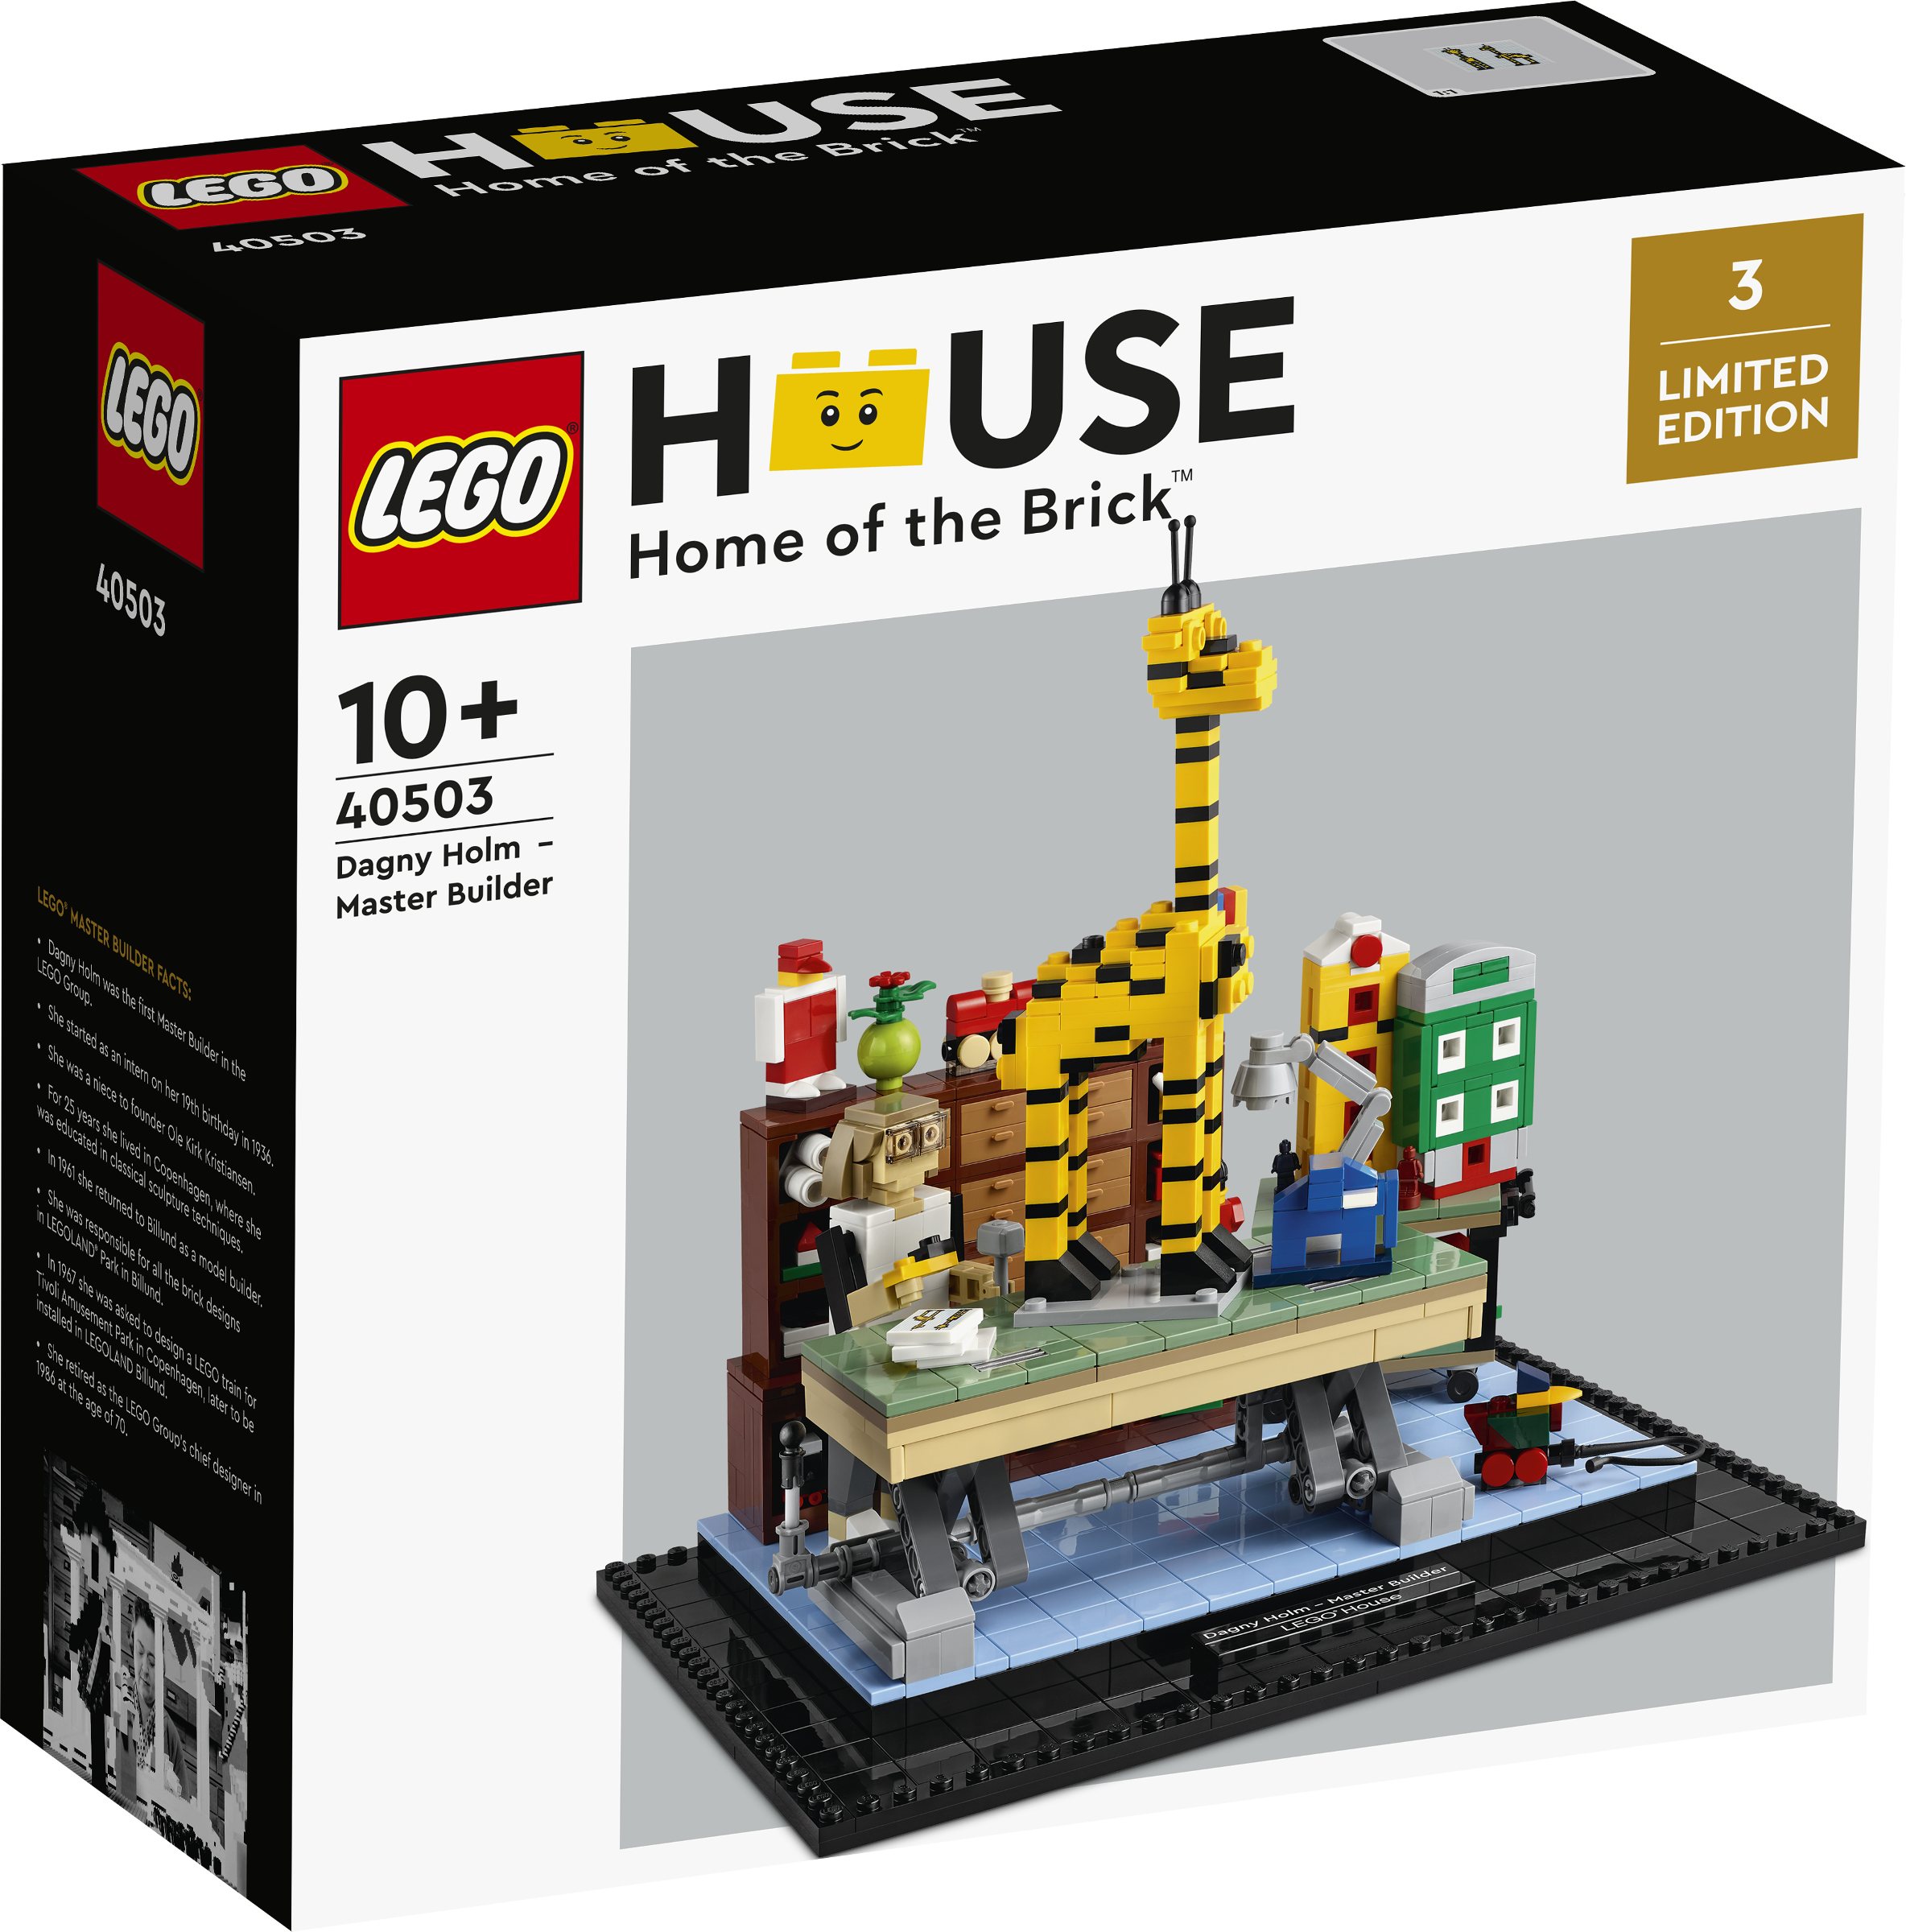 LEGO House Dagny - Master Builder Revealed - The Brick